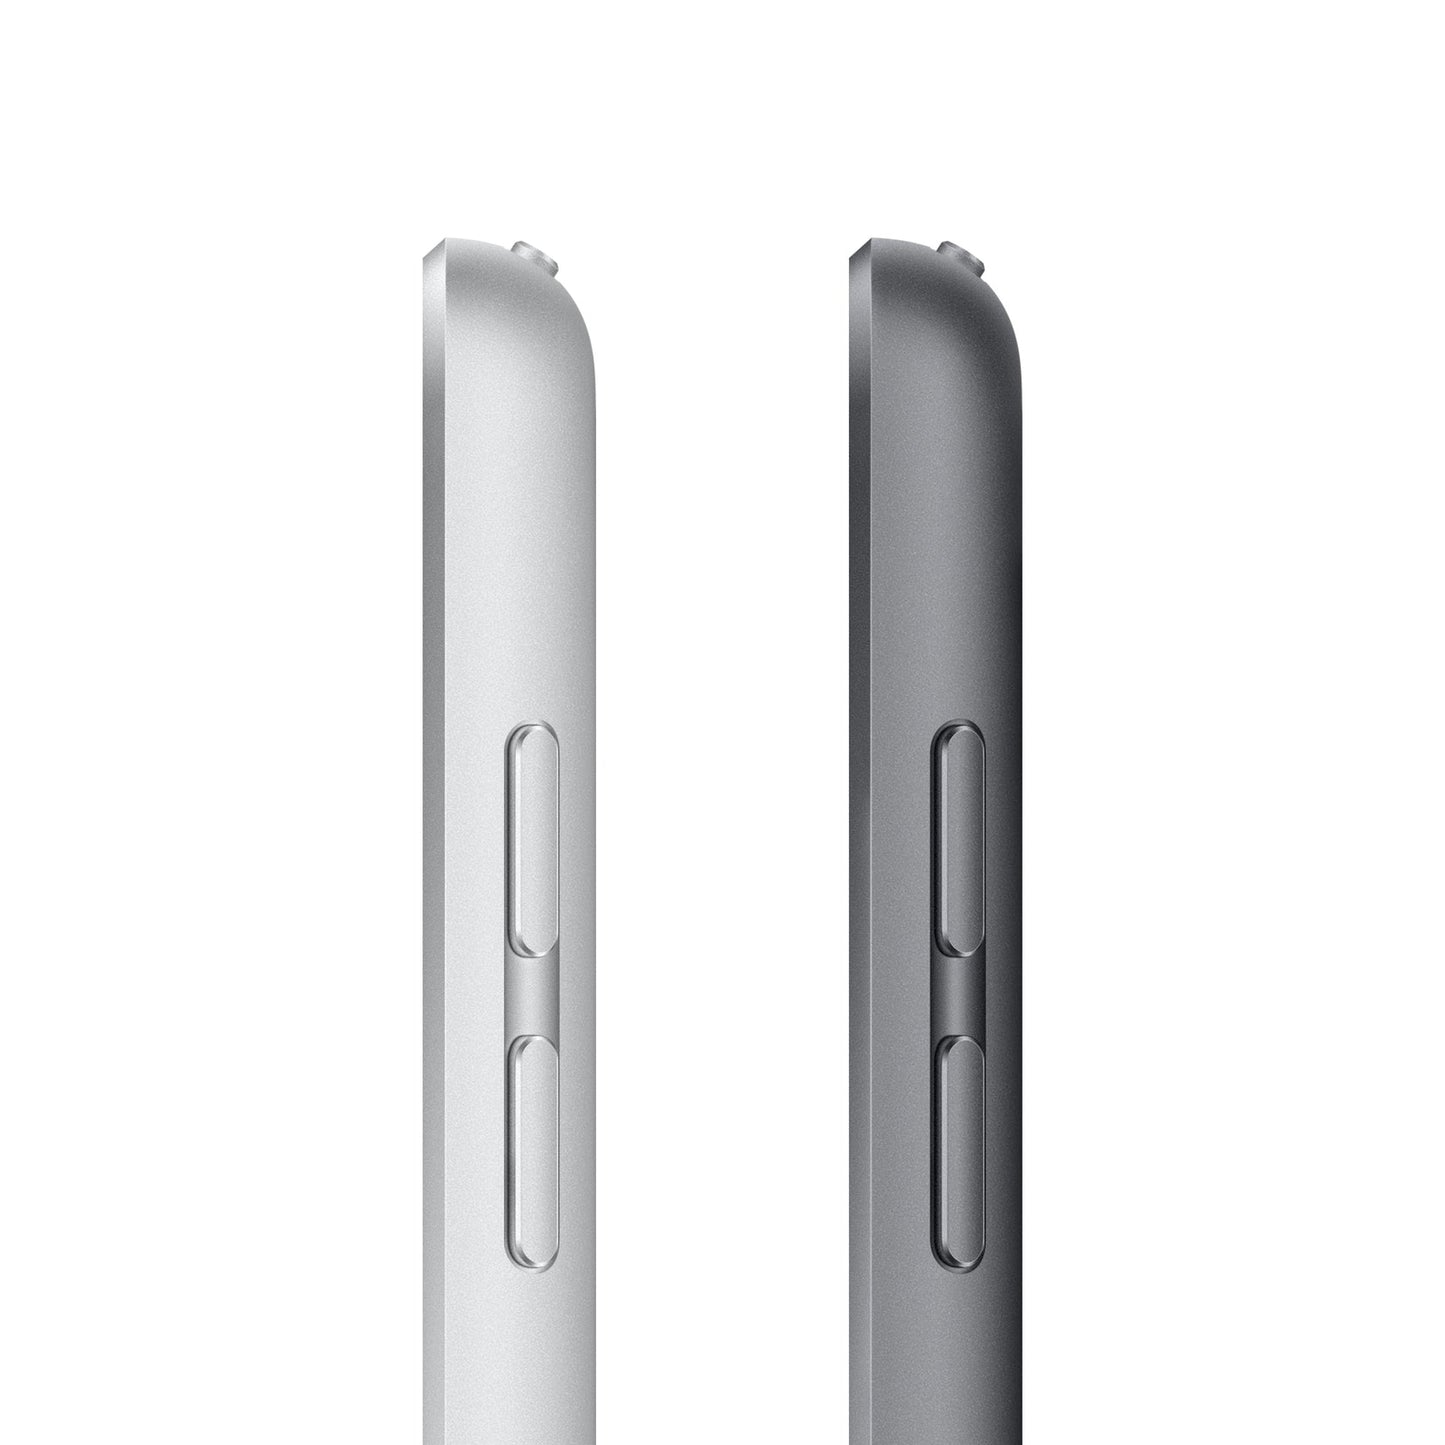 2021 10.2-inch iPad 9th generation 256GB Wi-Fi + Cellular - Silver